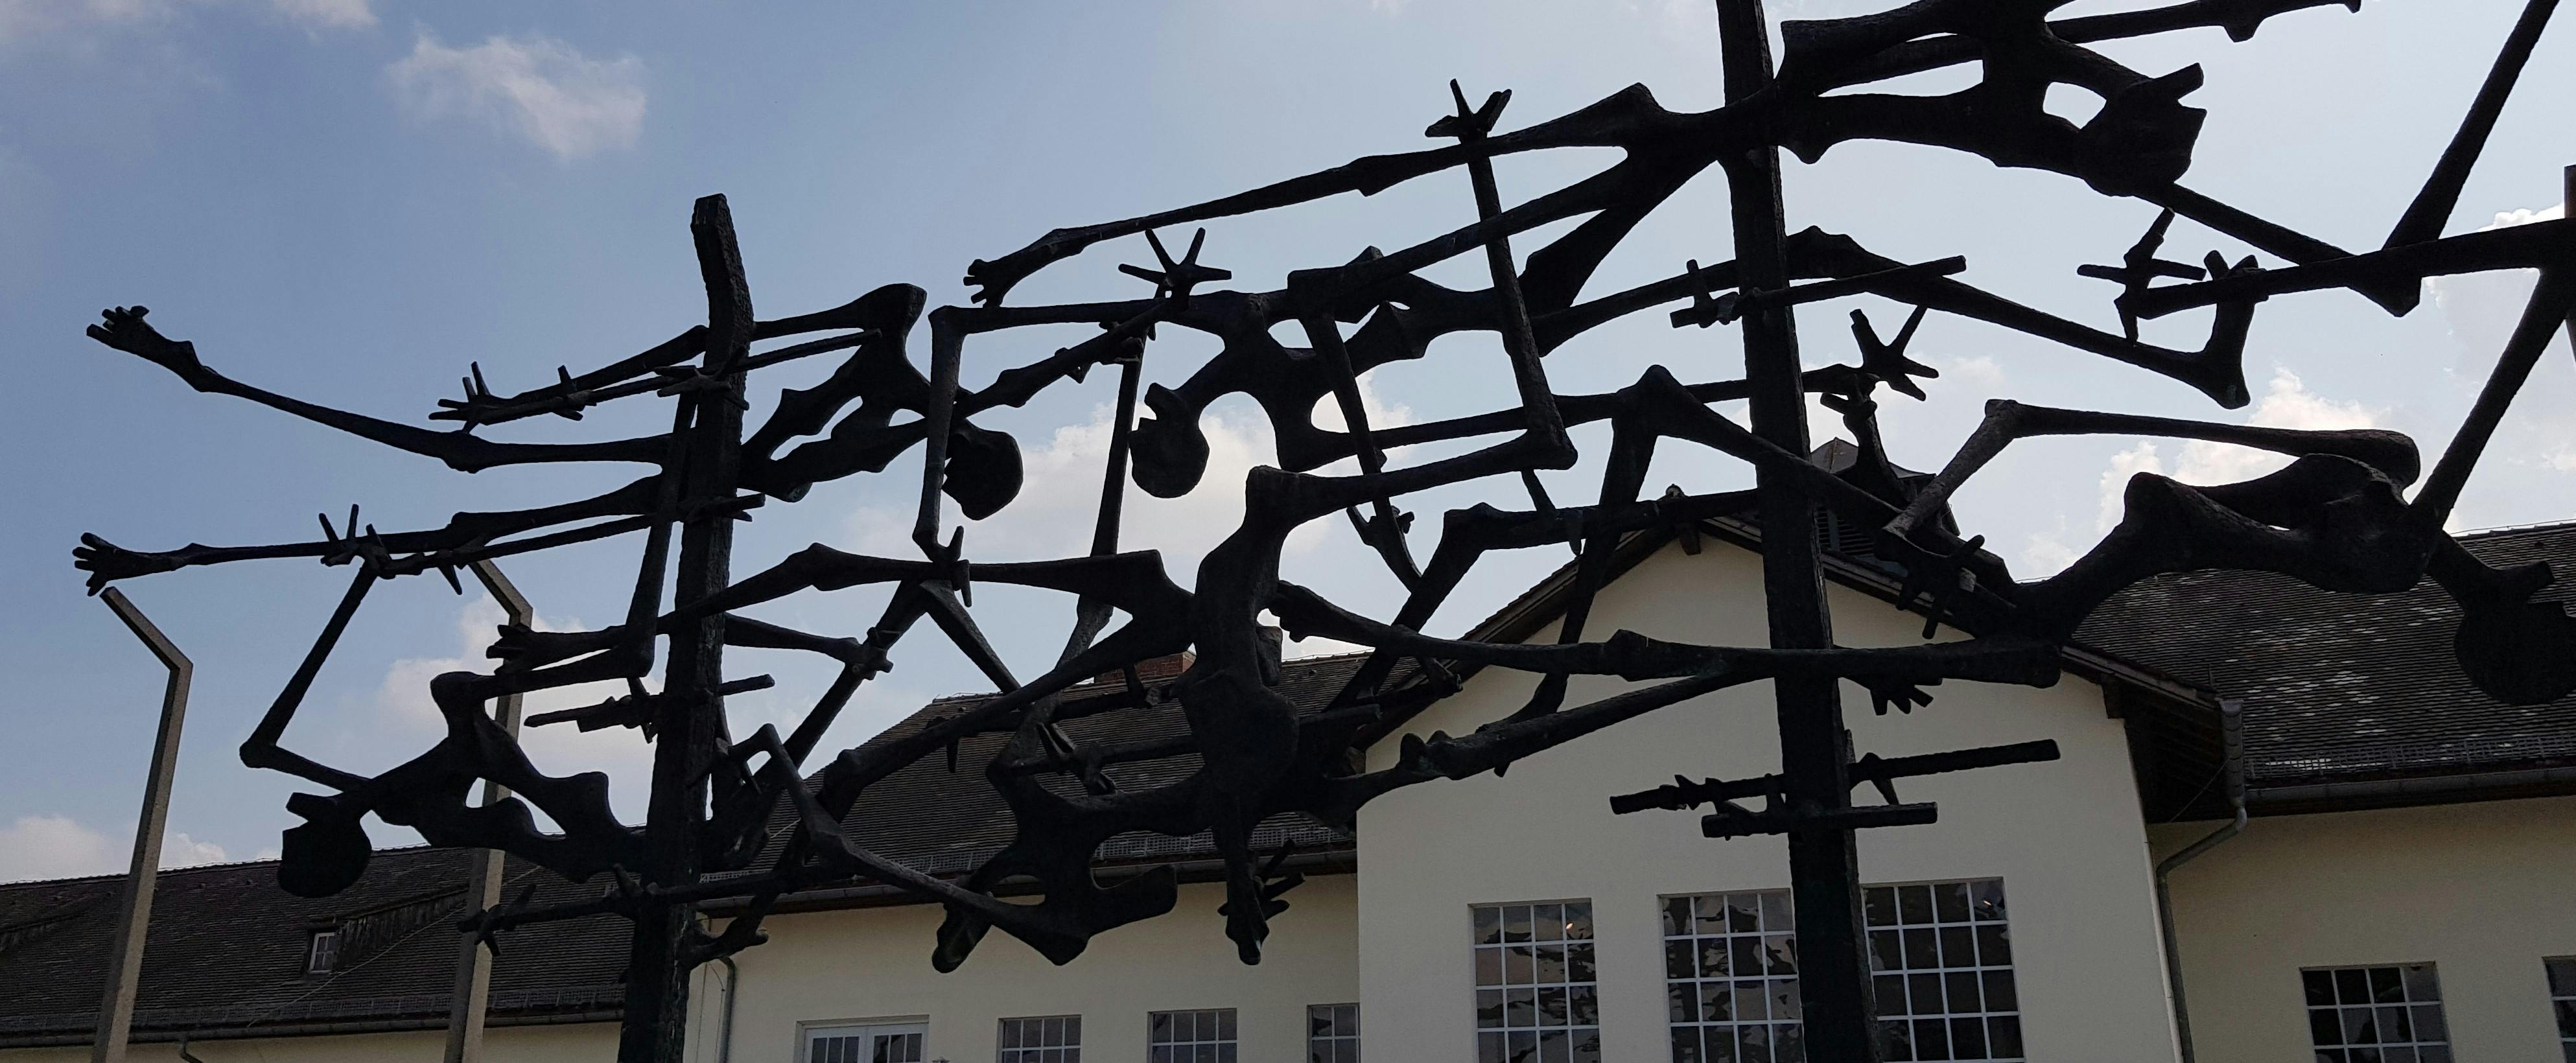 Viagem guiada ao Memorial do Campo de Concentração de Dachau com saída de Munique